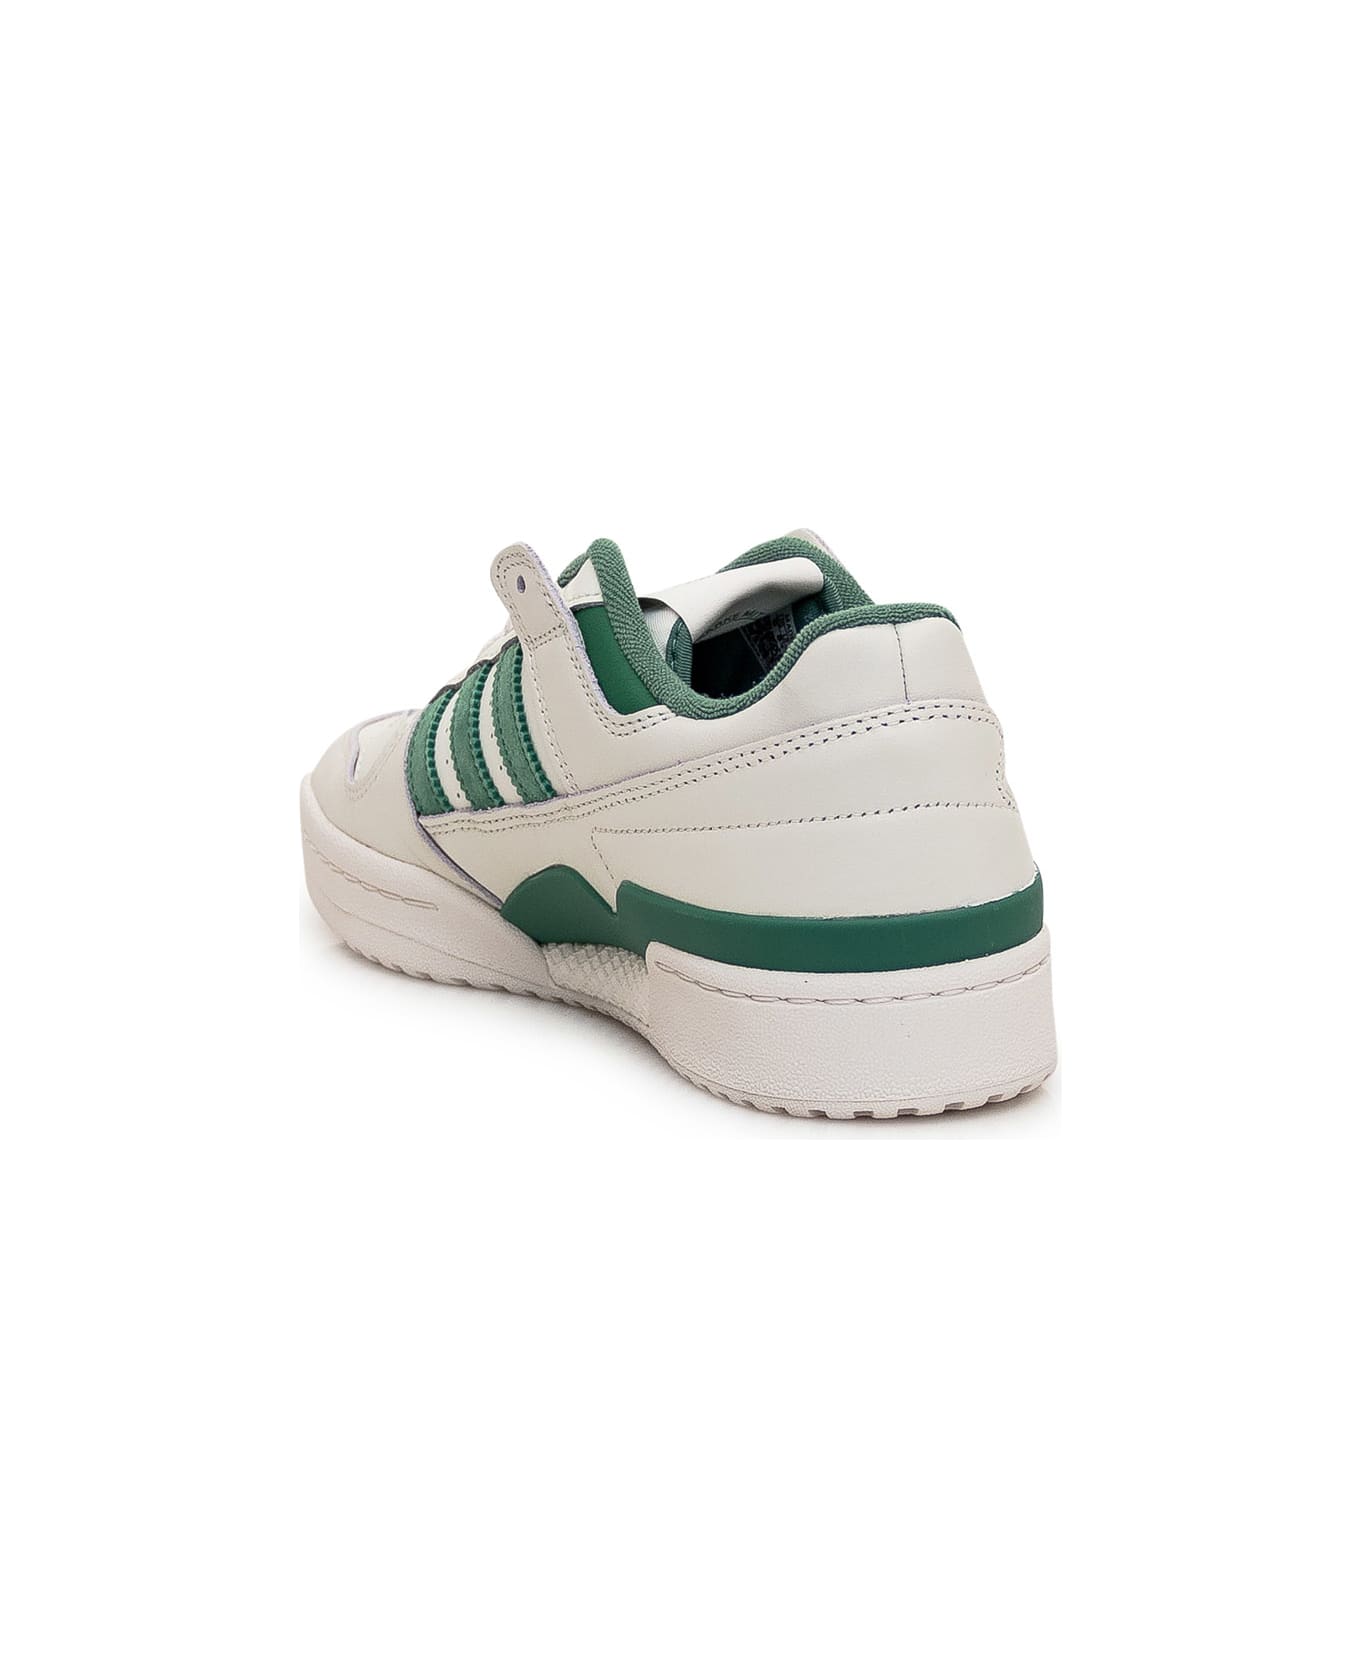 Adidas Originals Forum Low Sneaker - CLOWHI/PRLOGR/CLOWHI